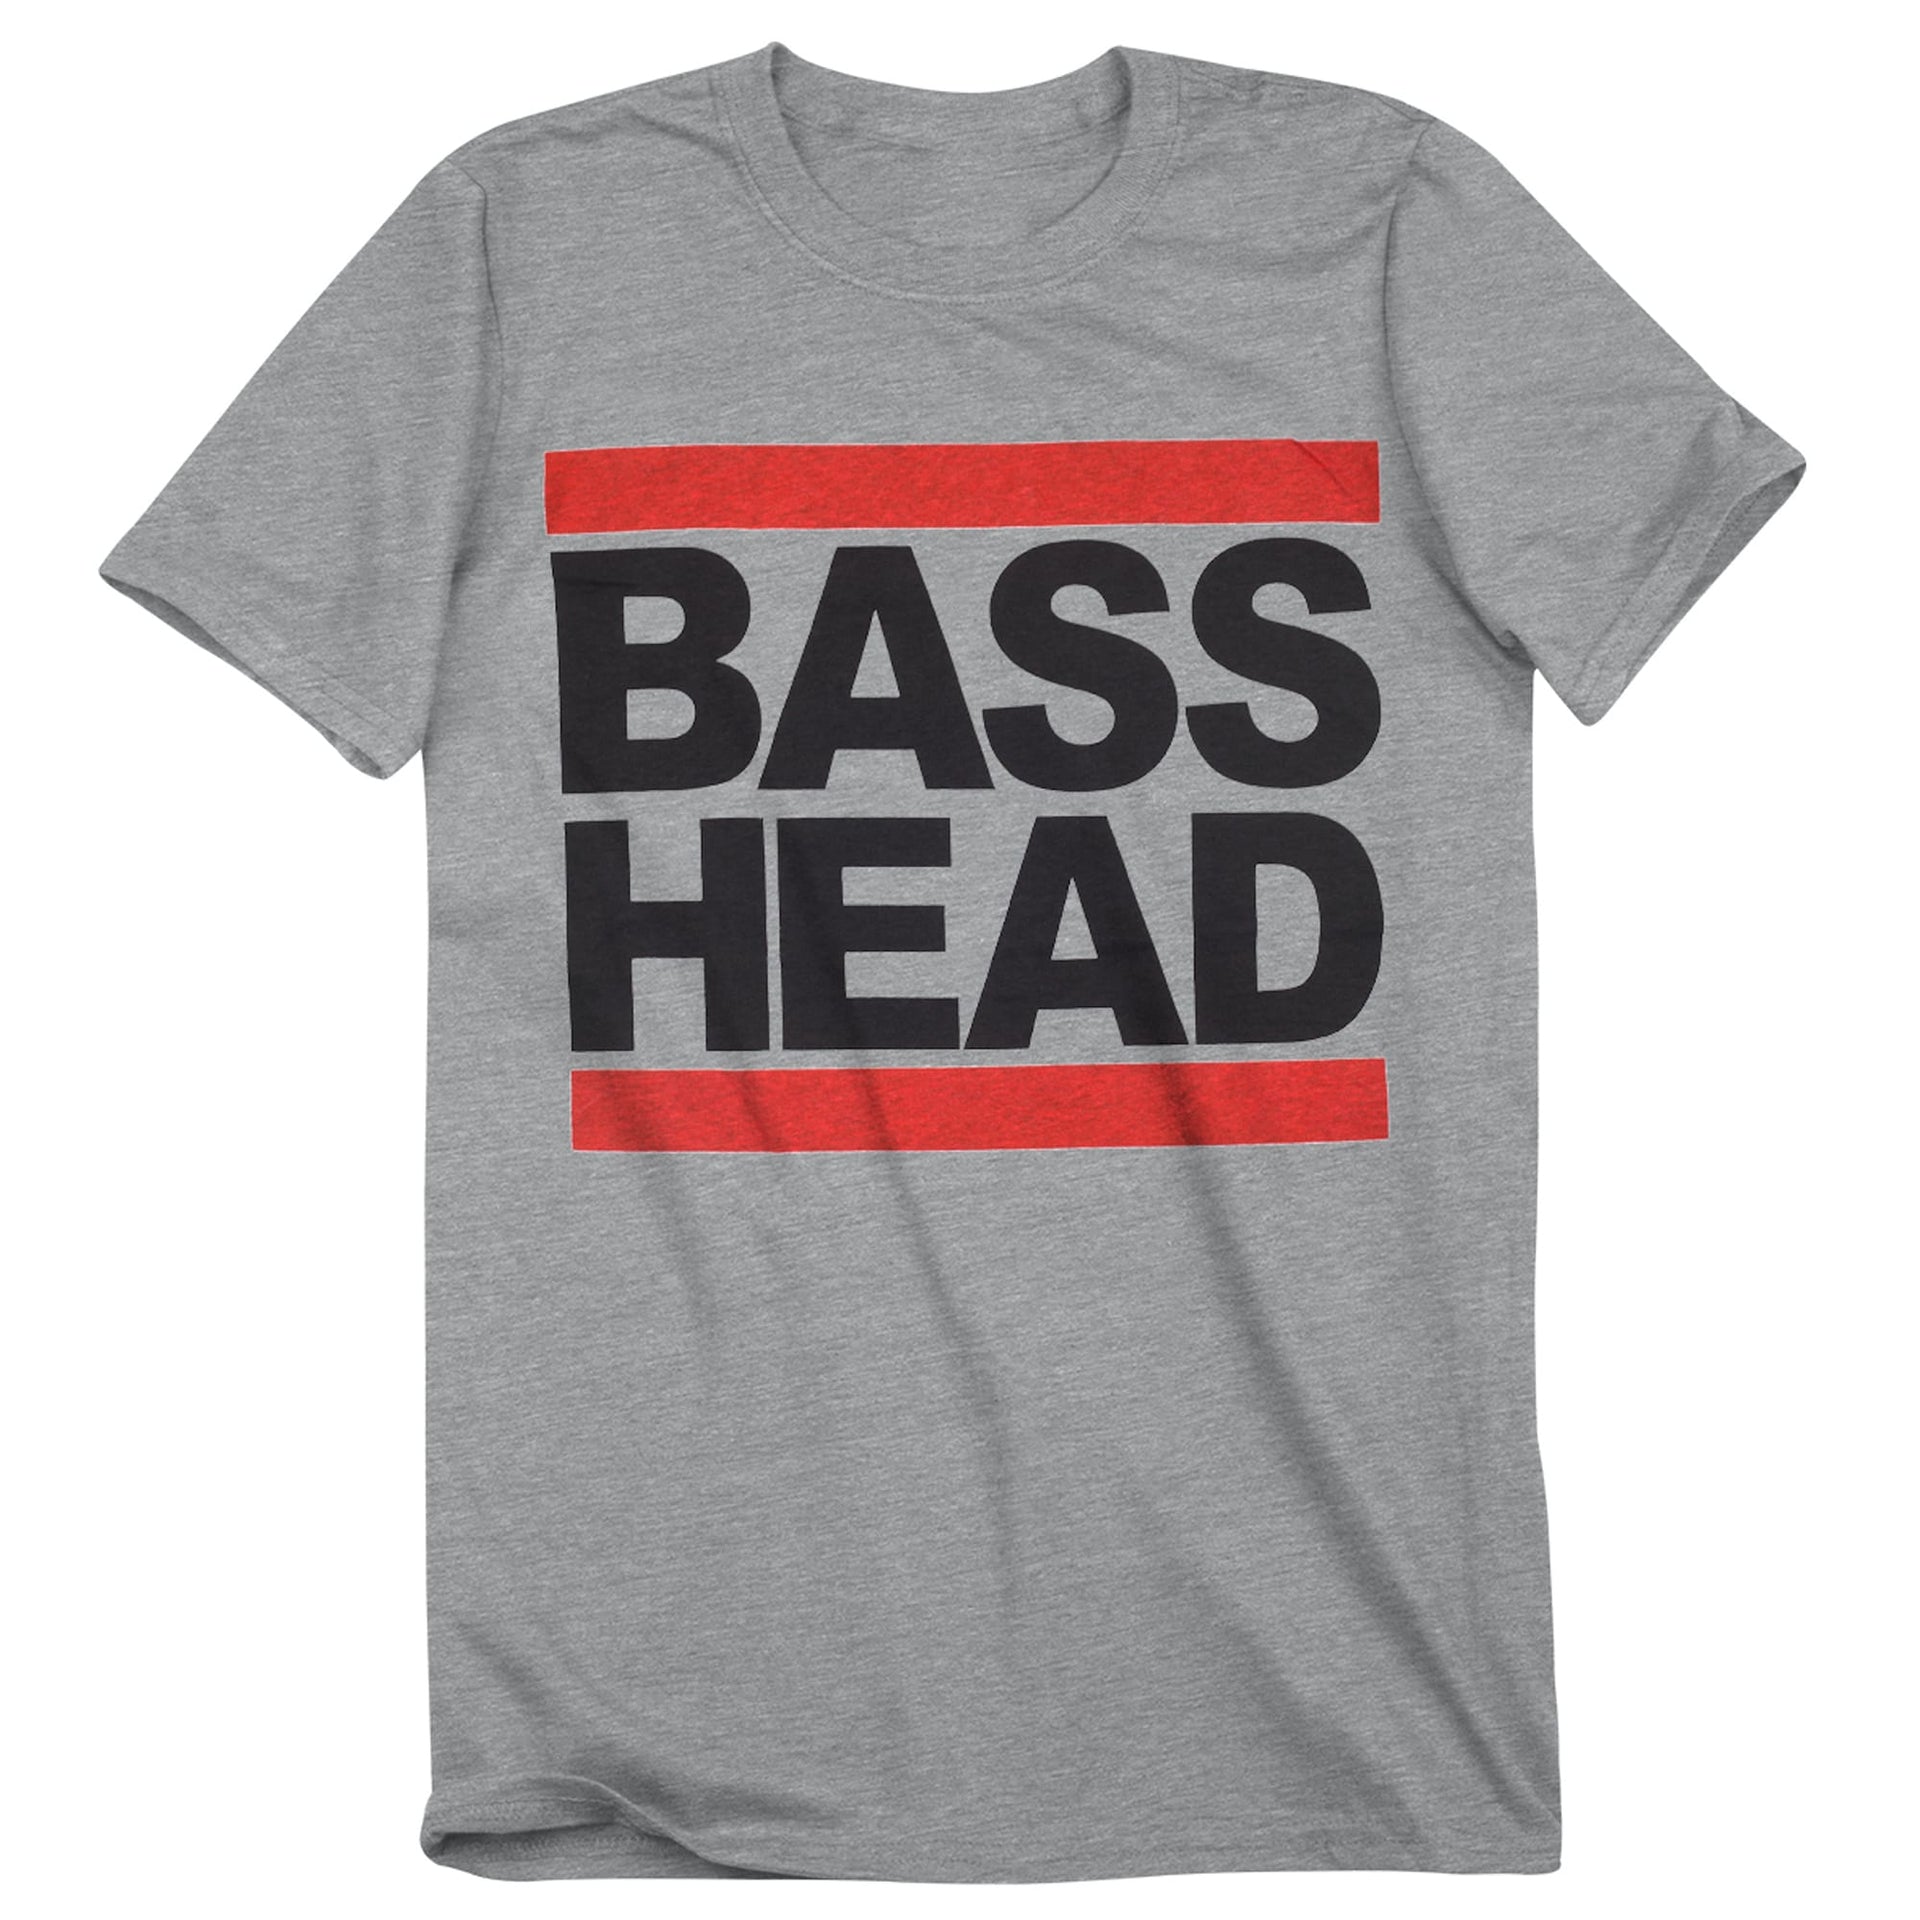 Bass Head tee in grey